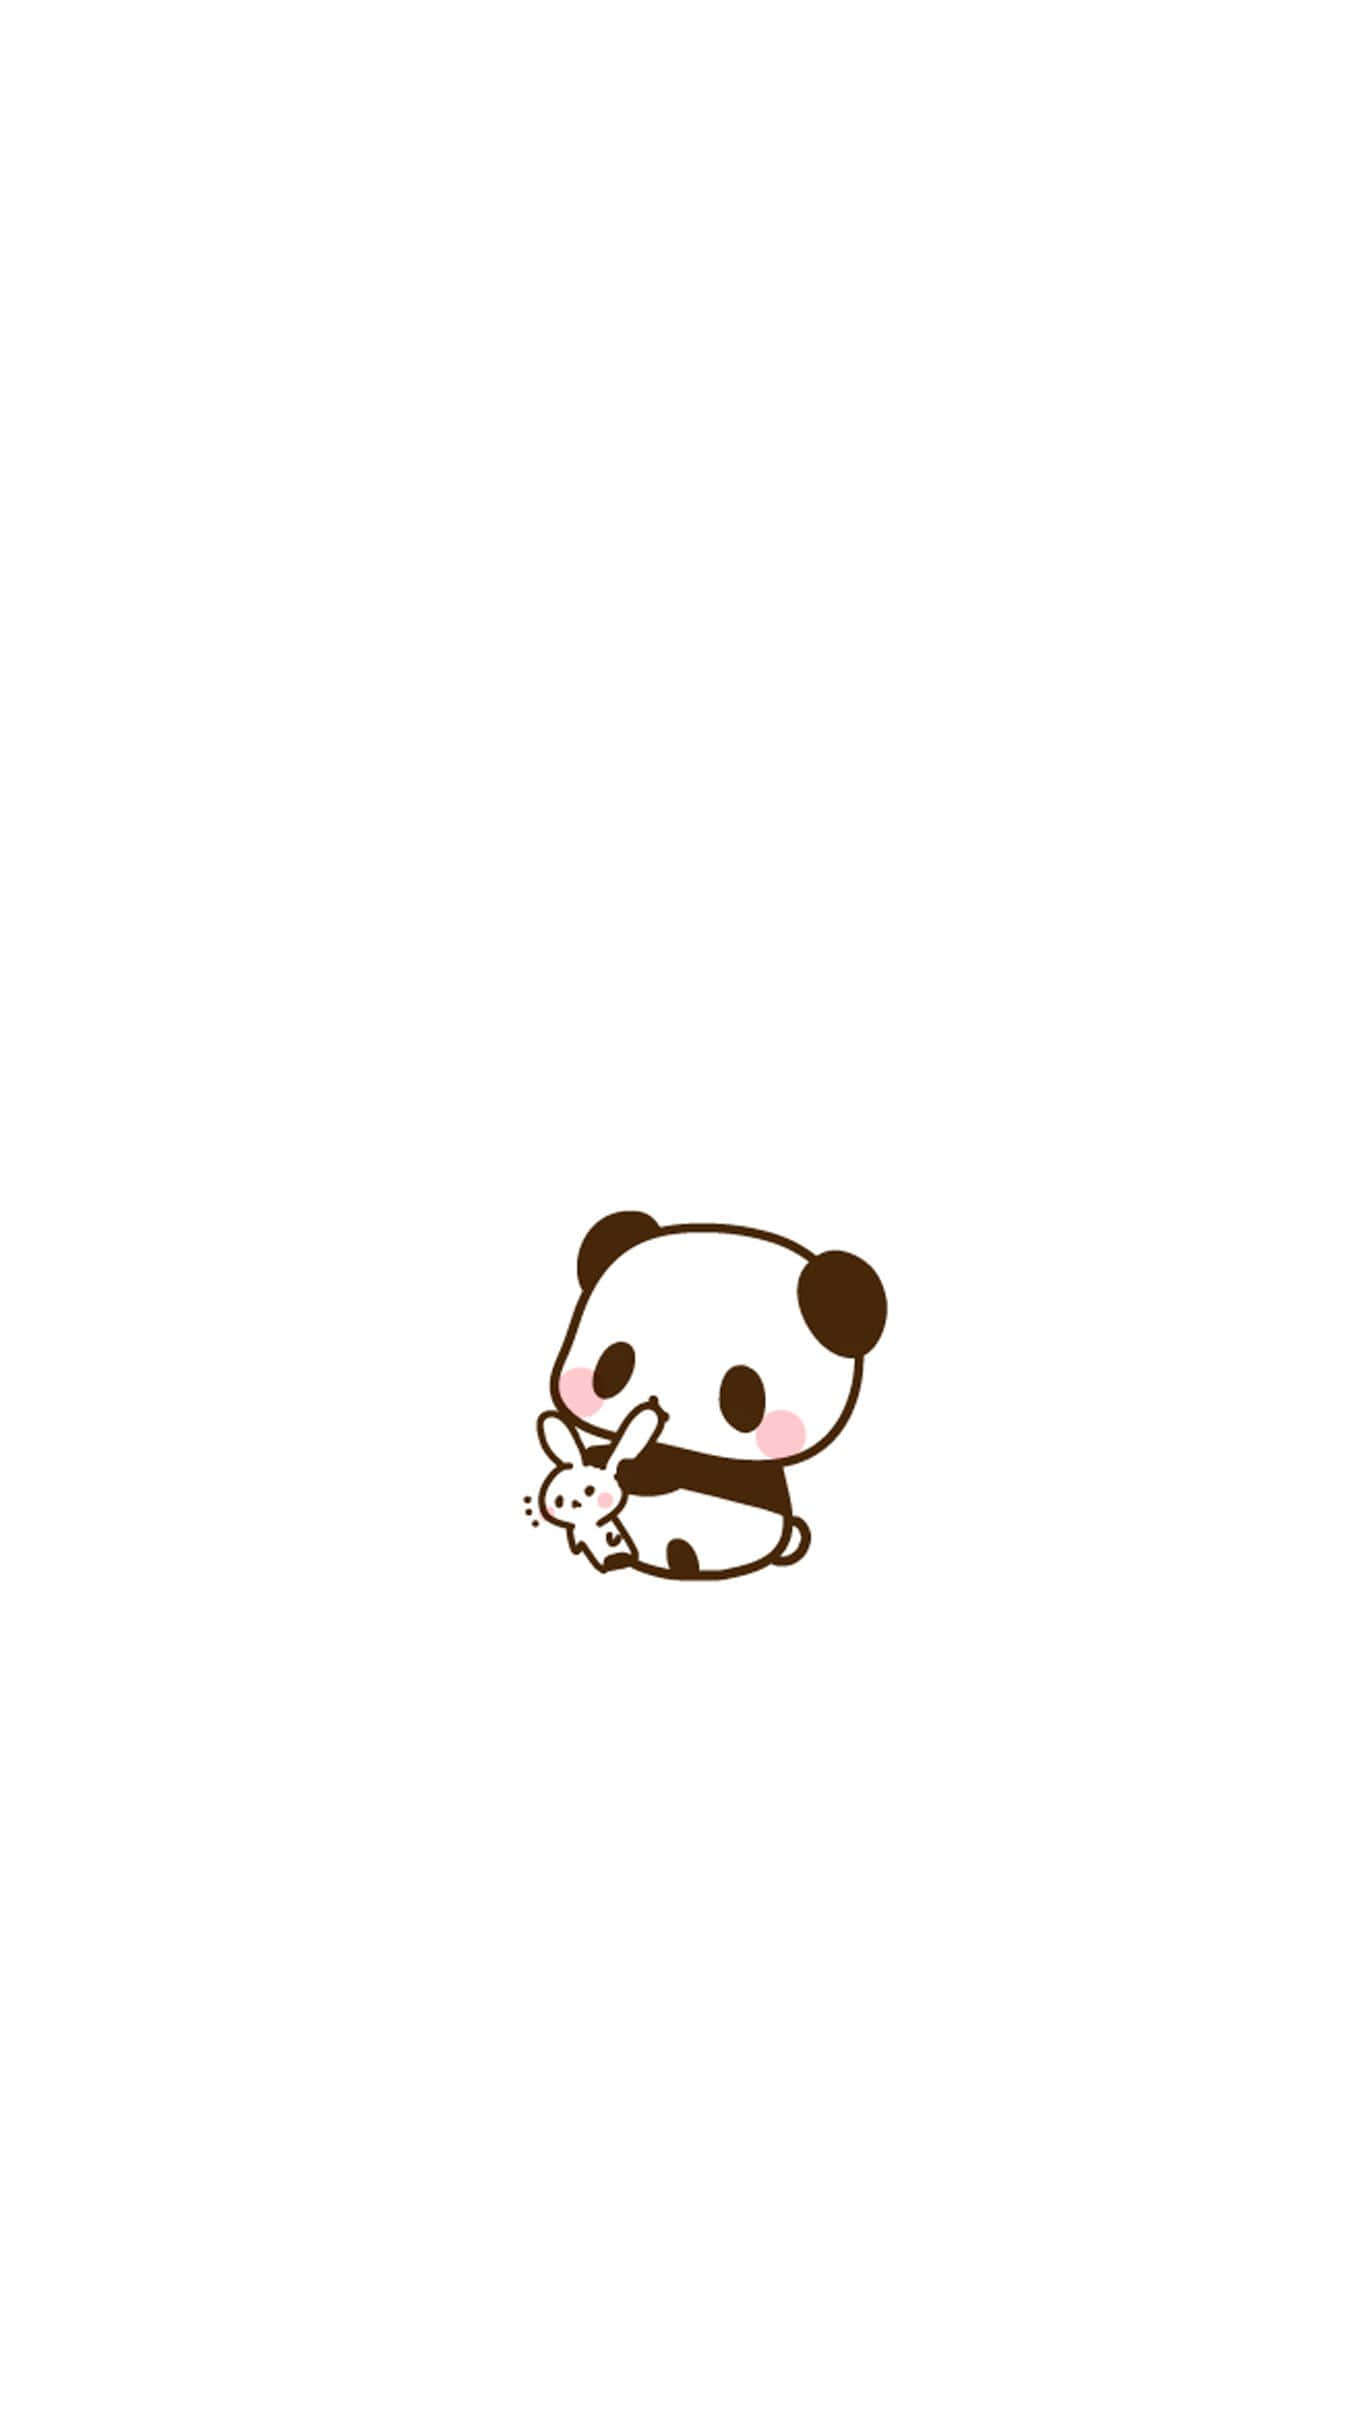 Umurso Panda Está Sentado Em Um Fundo Branco